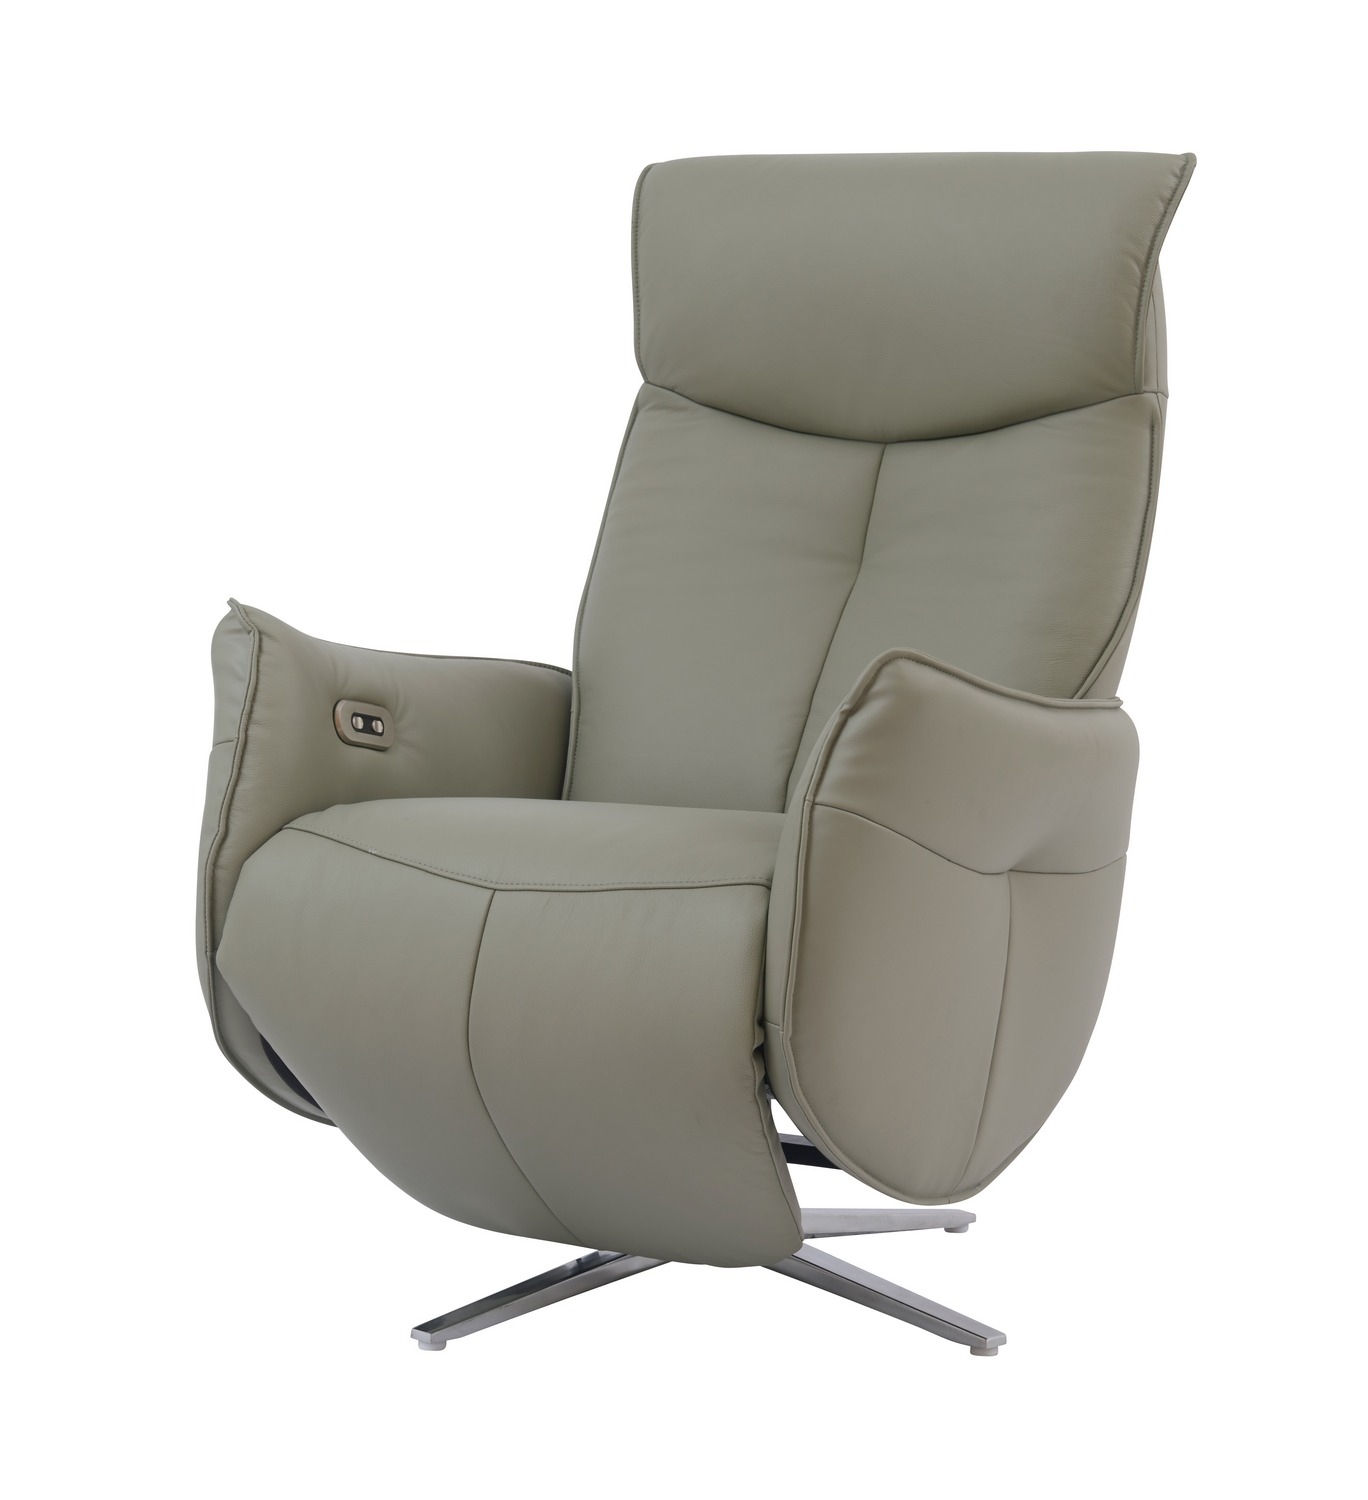 Barcalounger Ardon Power Pedestal Recliner Chair - Capri Grey/Leather Match